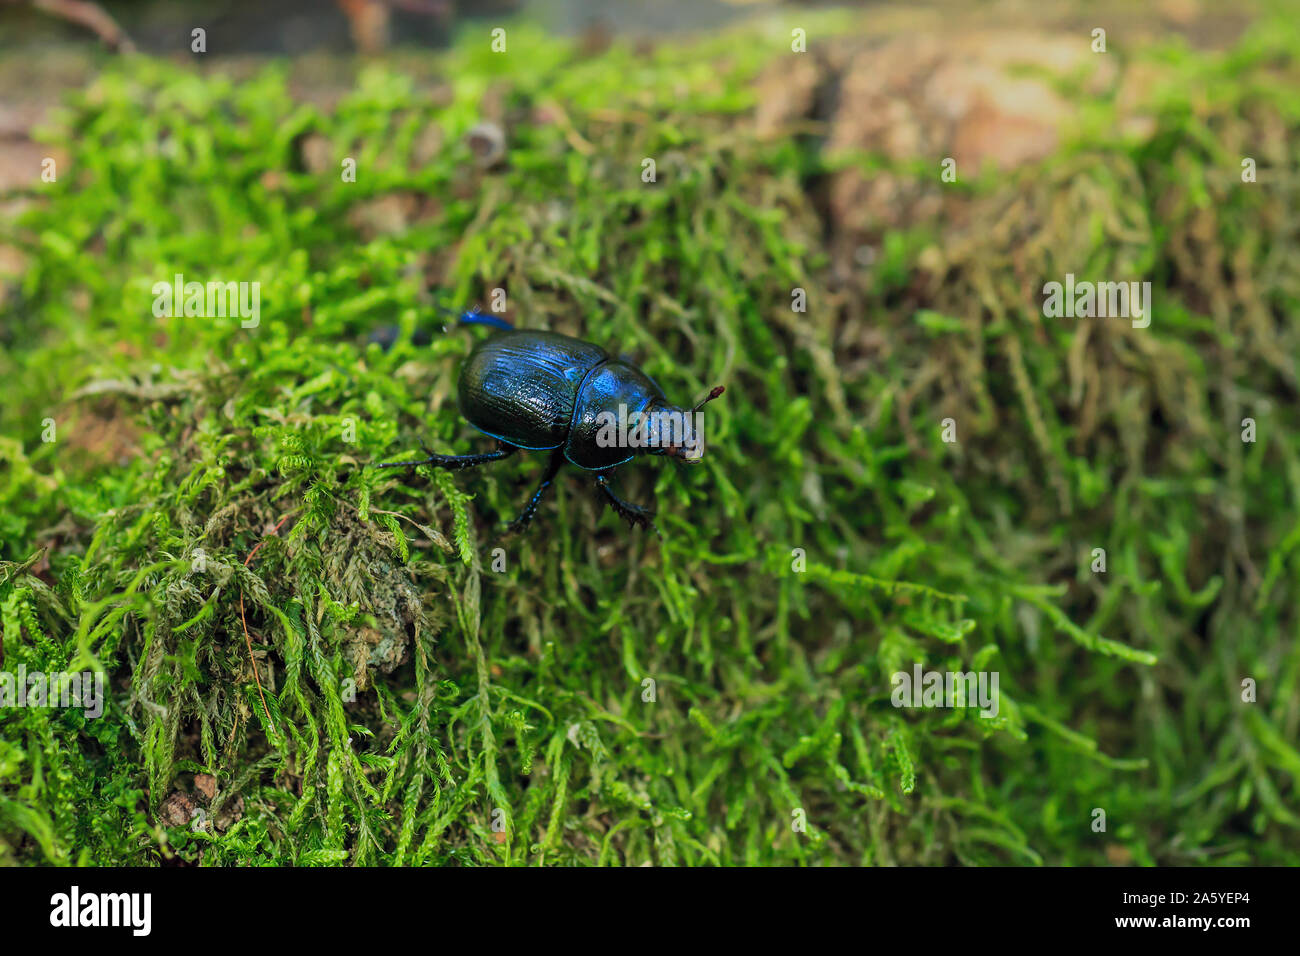 Azul metalizado tierra-aburrida de escarabajos en verde musgo. Anoplotrupes stercorosus bug en bosque de verano, el enfoque selectivo Foto de stock